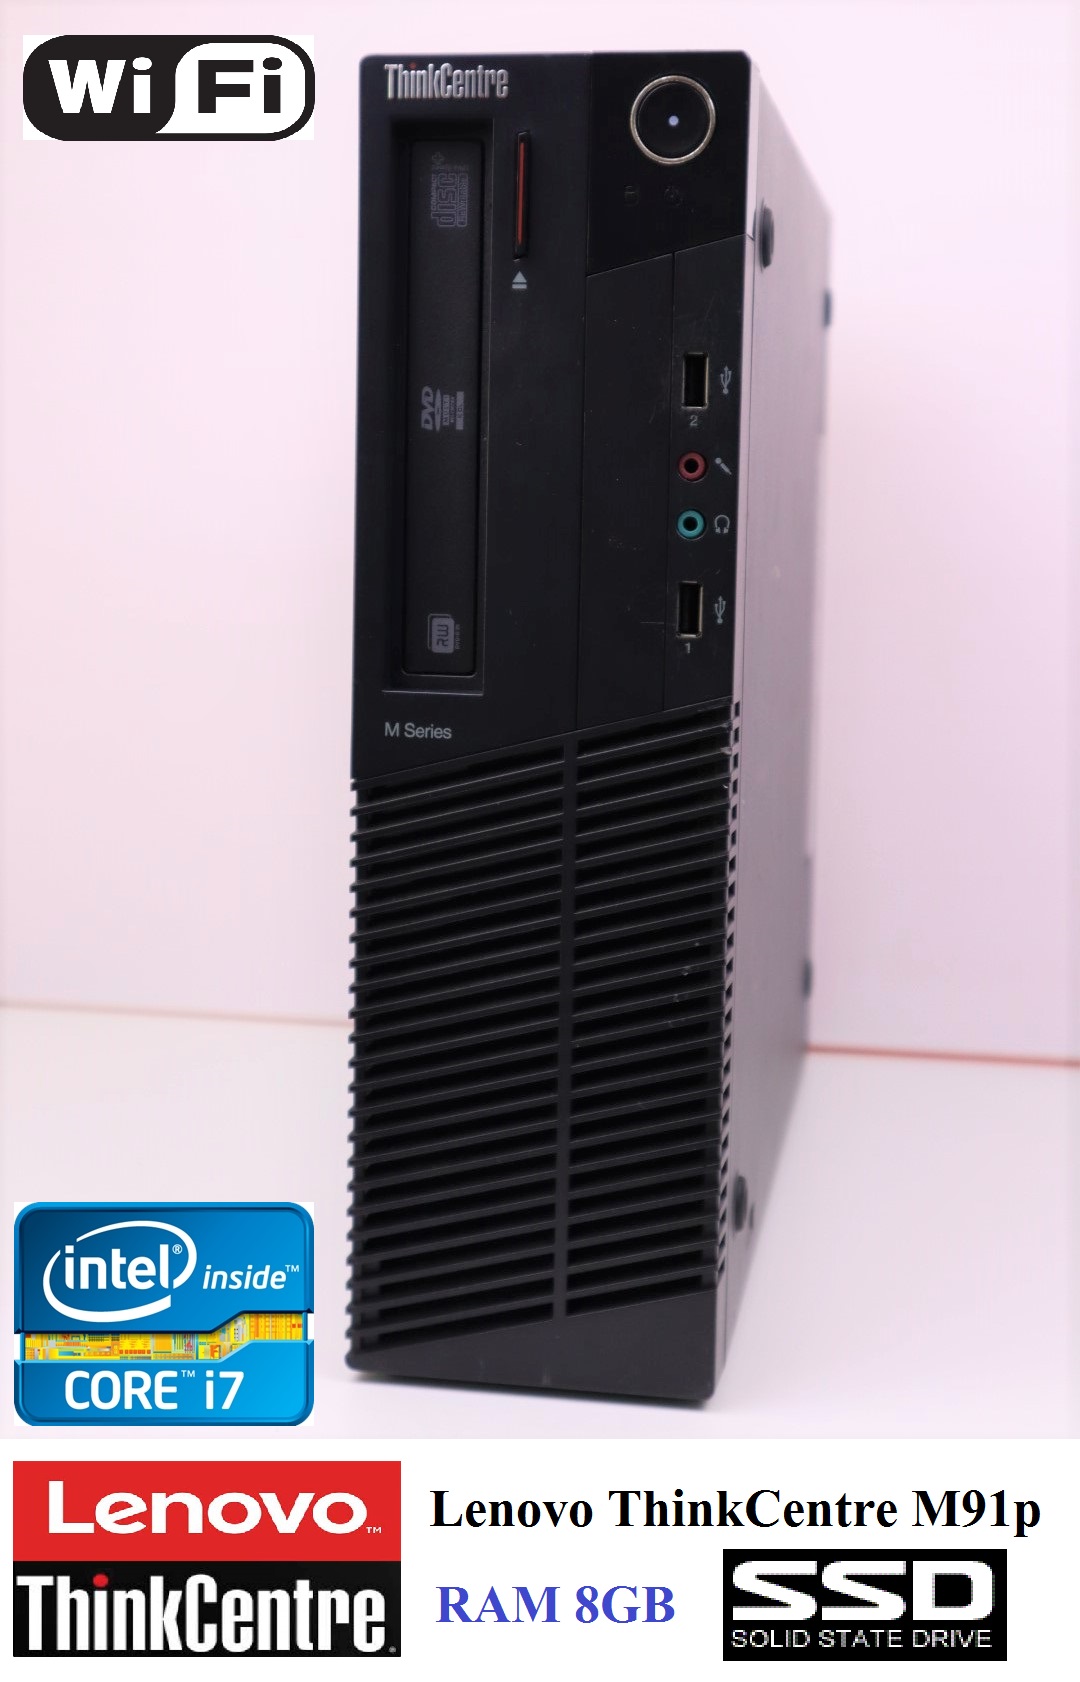 คอม Lenovo ThinkCentre M91p  Intel Core i7-2600 3.4GHz -RAM 8GB -HDD SSD 120GB -Wi-Fi